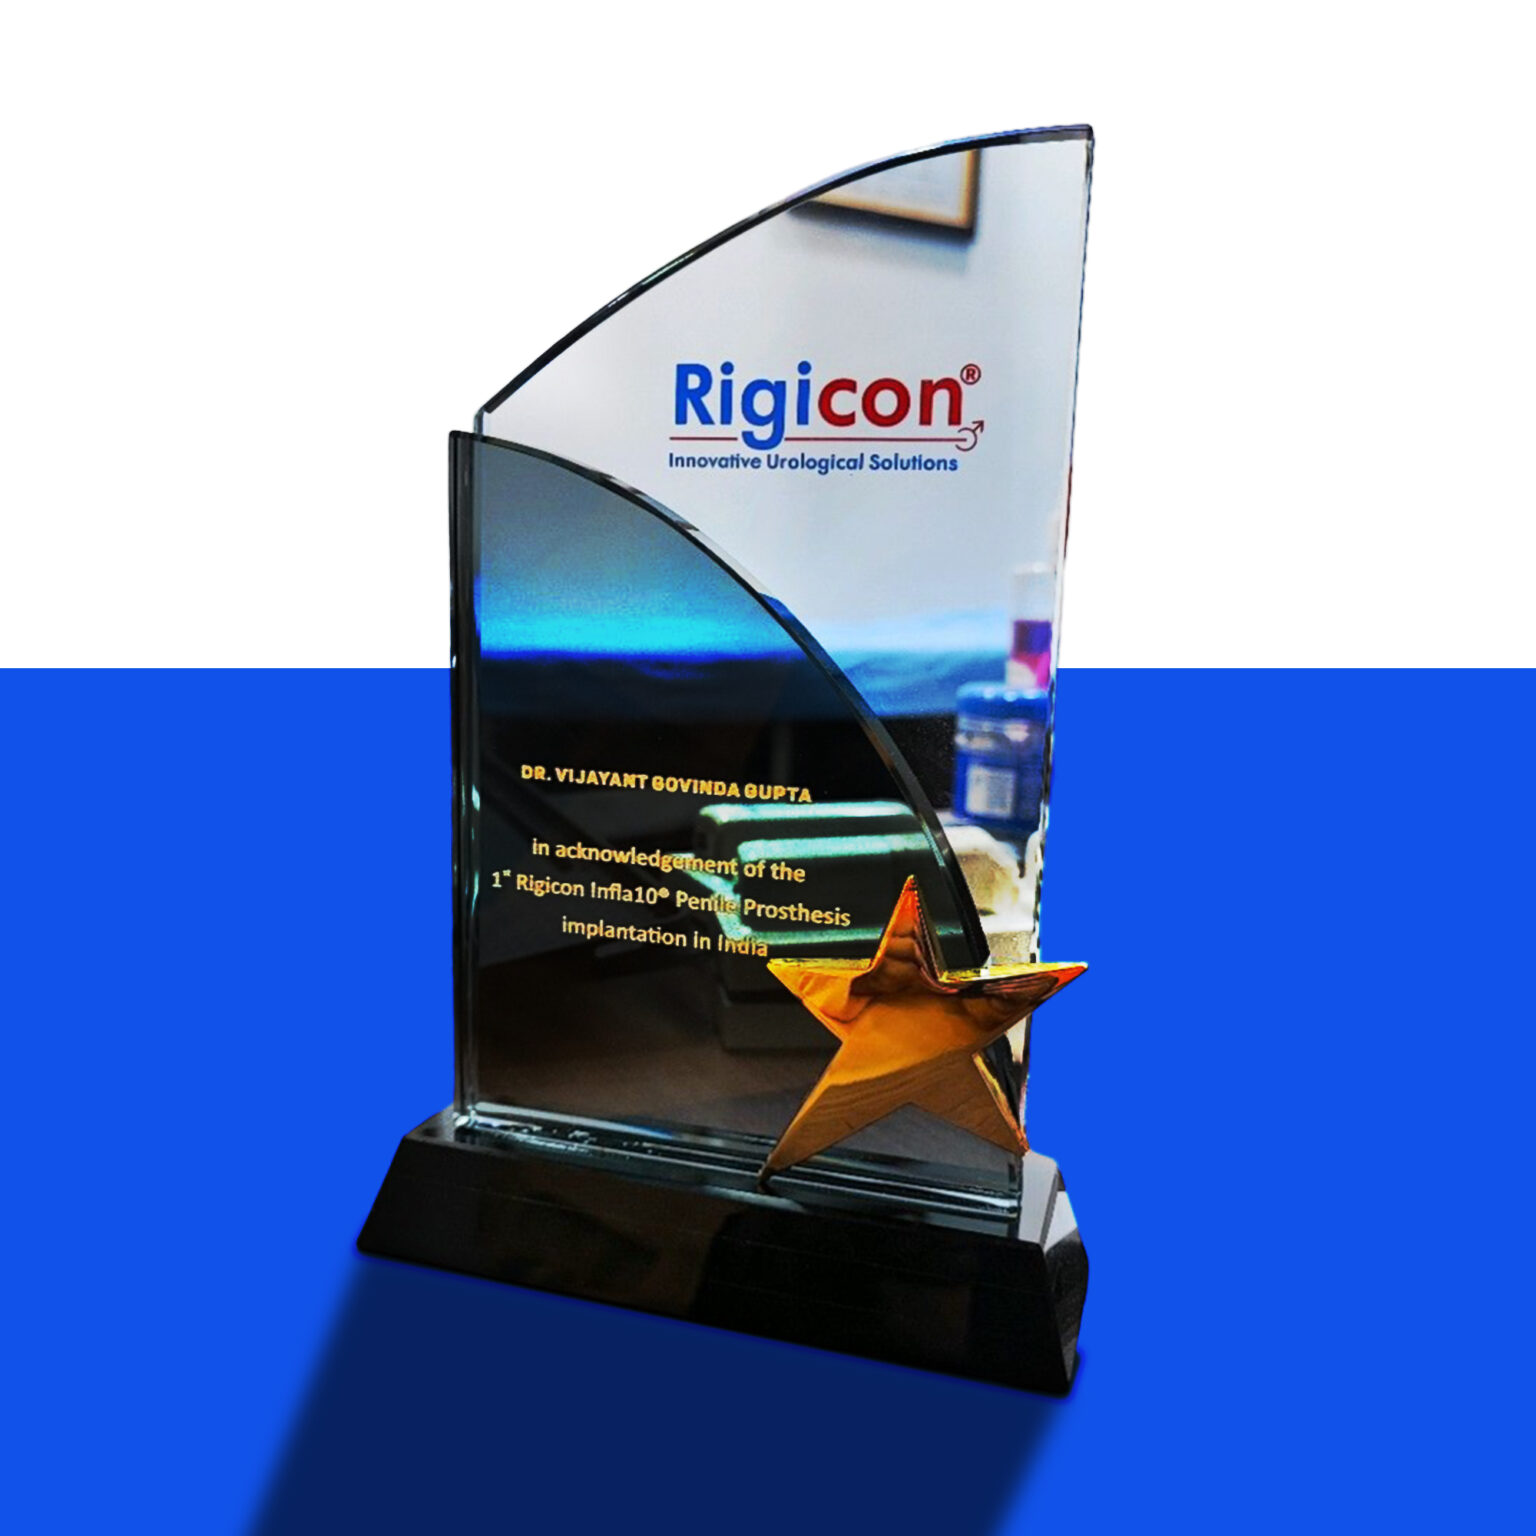 Rigicon Brand Ambassador - Dr. Vijayant Govinda Gupta